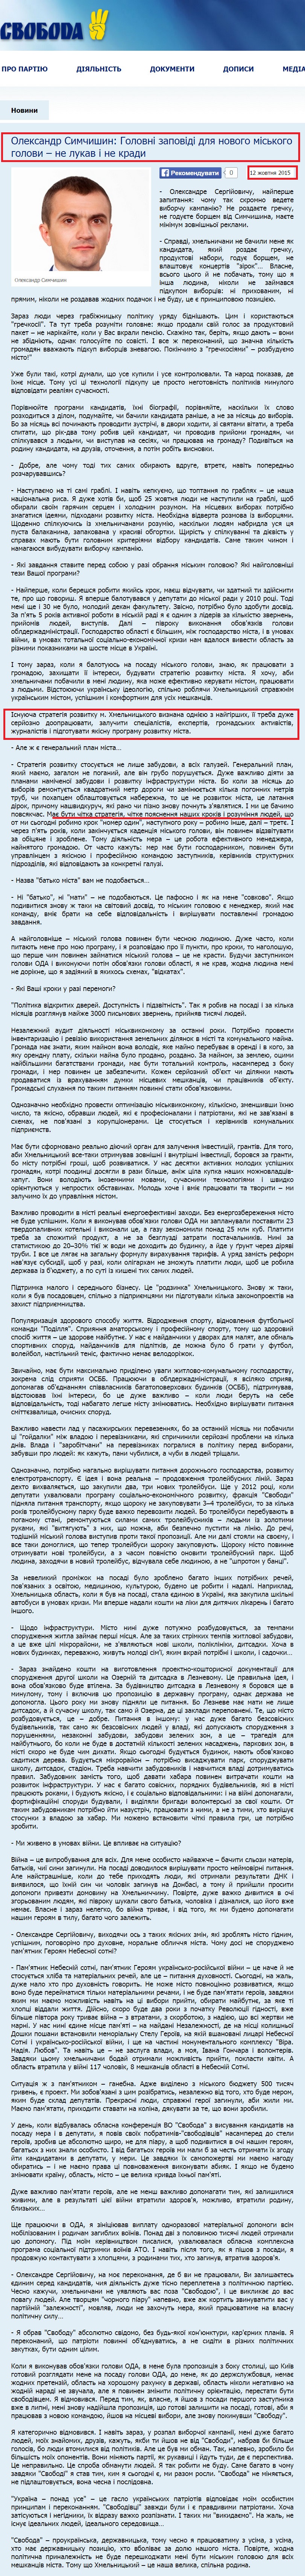 http://www.khmelnytskyy.svoboda.org.ua/diyalnist/komentari/060005/